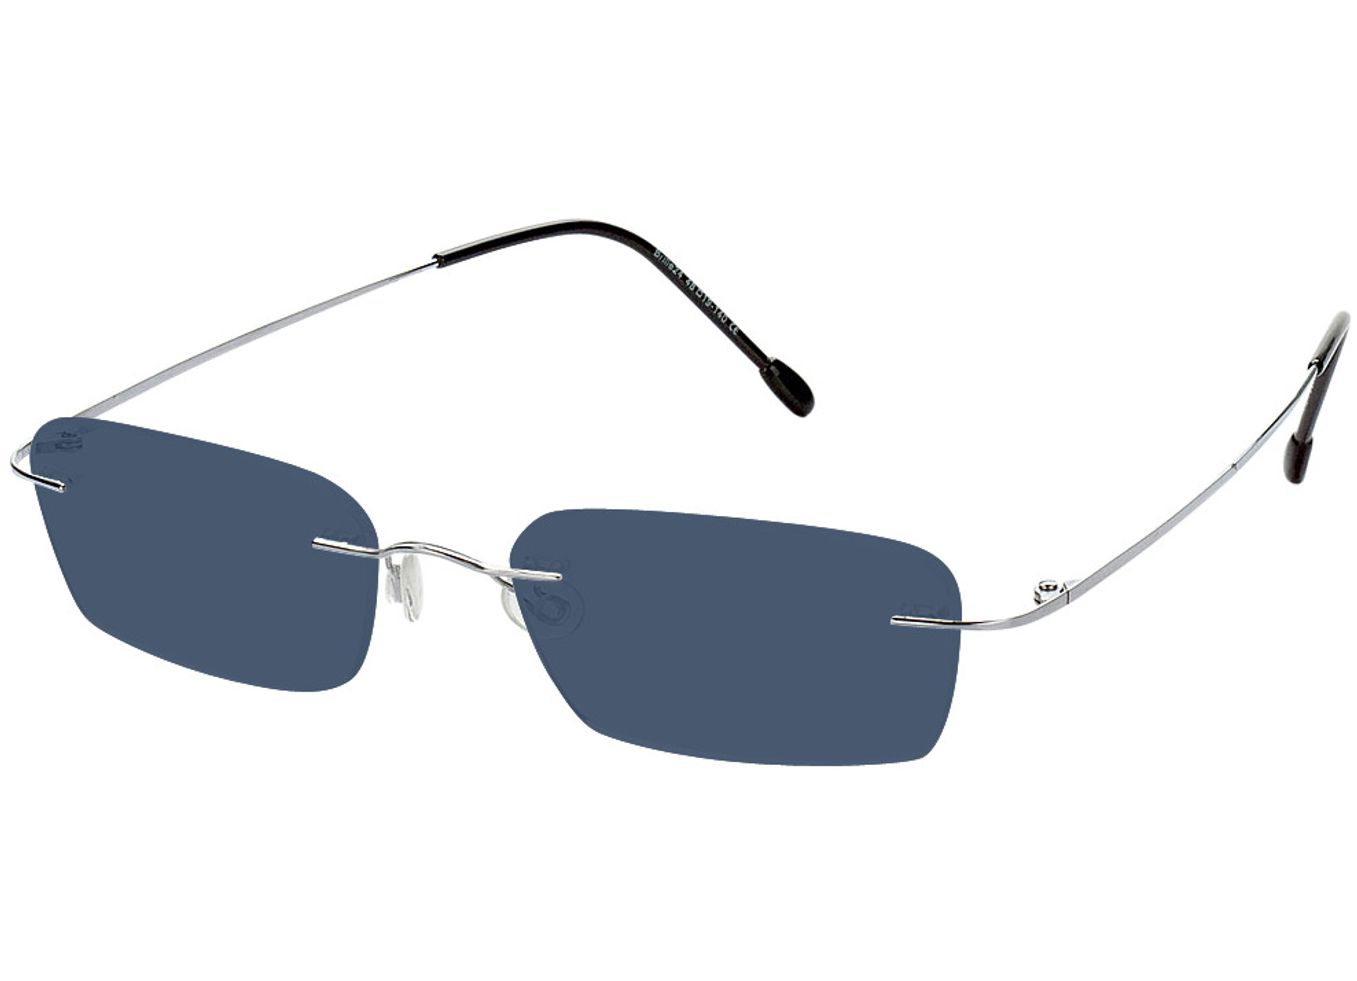 Davos - silber Sonnenbrille ohne Sehstärke, Randlos, Rechteckig von Brille24 Collection